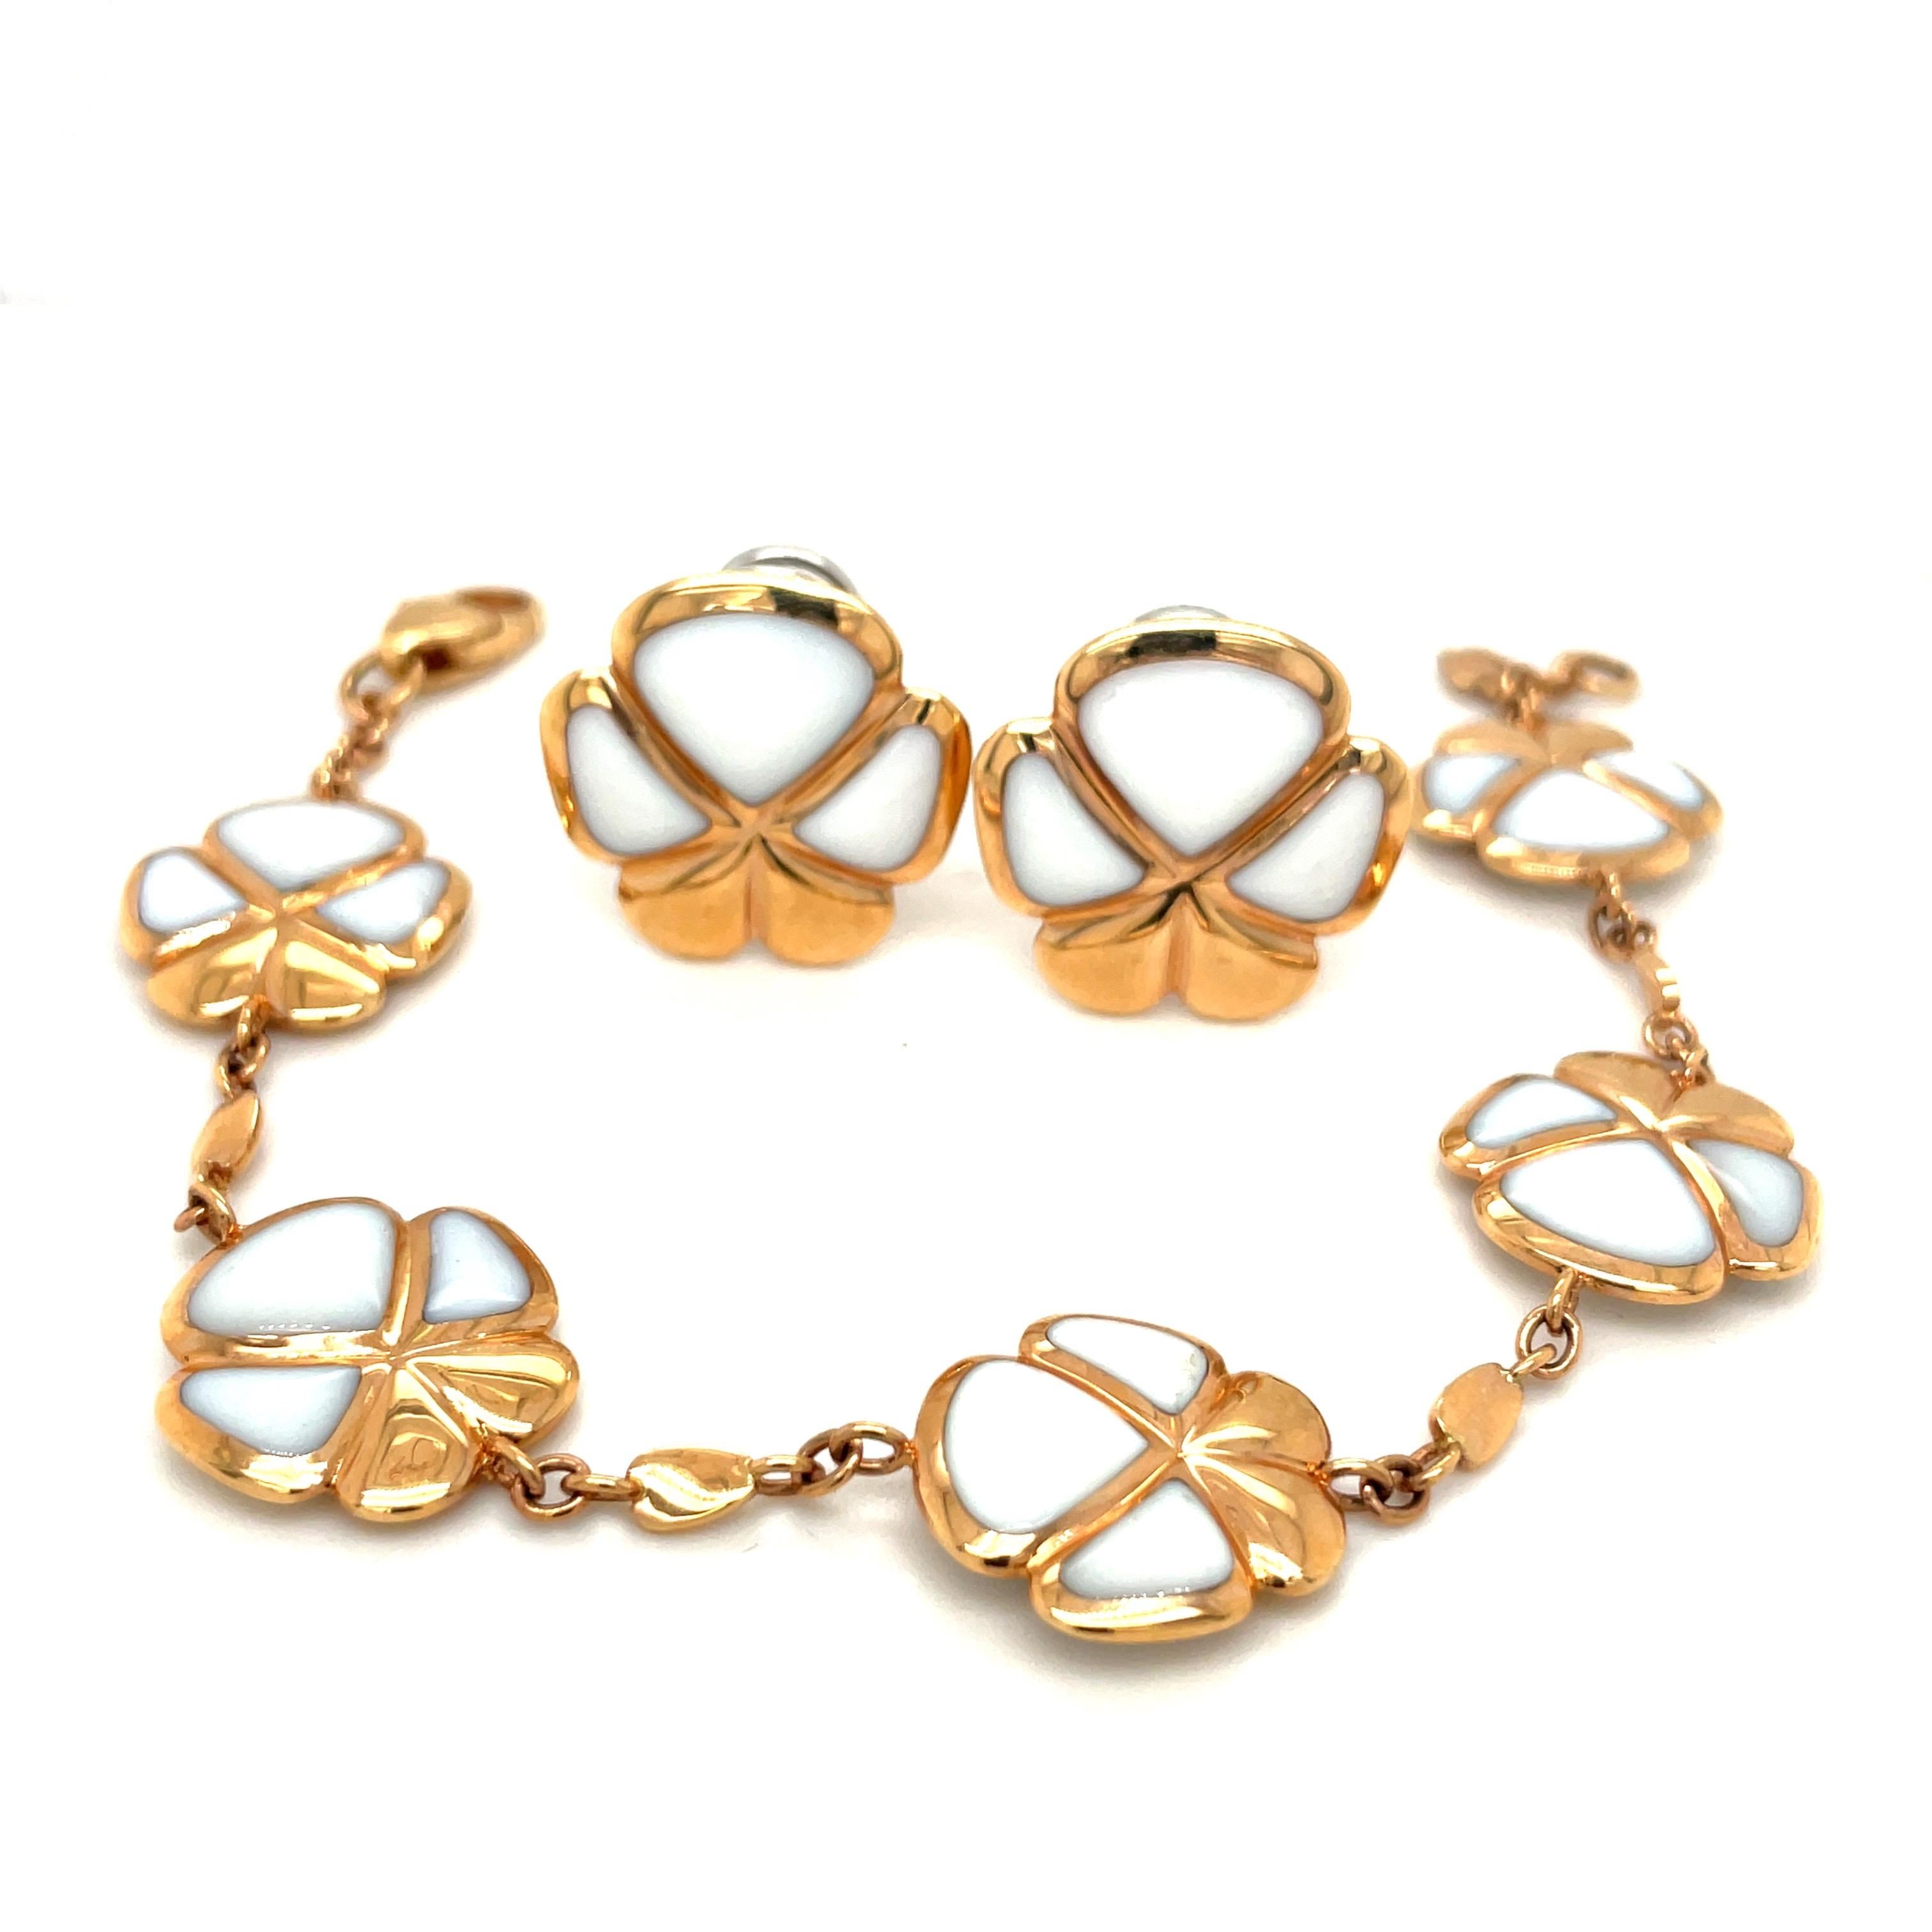 Créées par le célèbre joaillier italien De AMBROSI, en exclusivité pour Cellini Jewelers, ces boucles d'oreilles trèfle à 5 feuilles sont incrustées de kogolong blanc en or rose 18 carats.

La collection Viola de Cellini comprend un collier, des